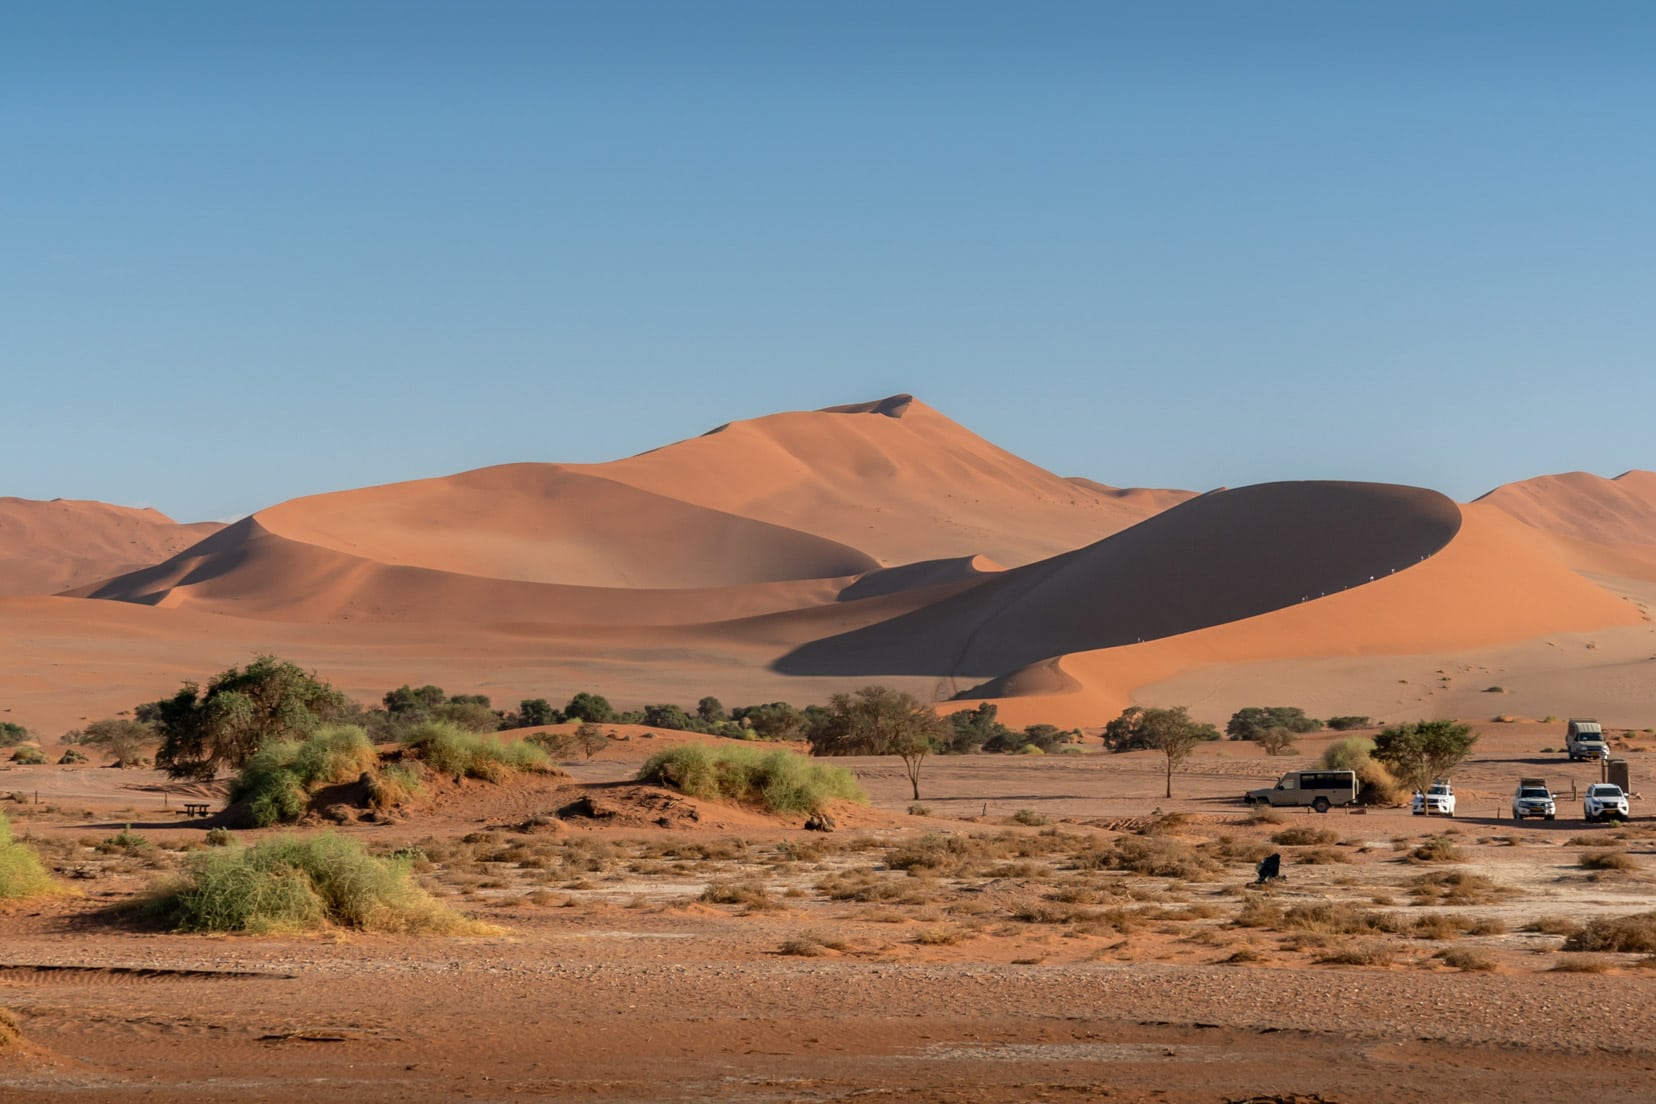 Big-Mama-dune as-seen-from-near-Deadvlei, Sossusvlei